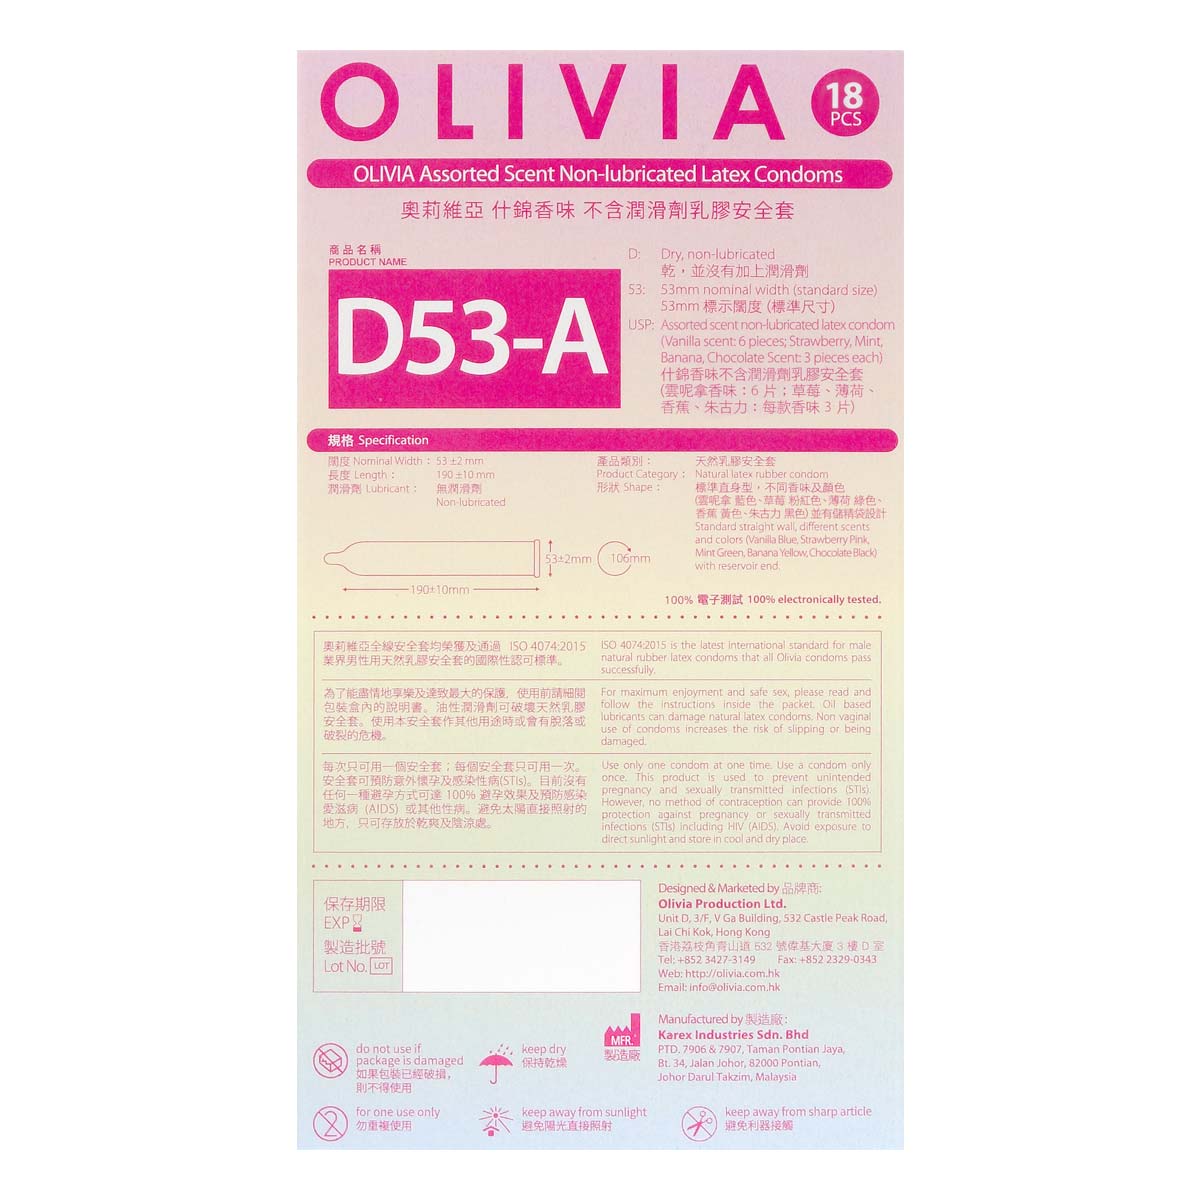 Olivia Assorted Scent Oral Condom 18's Pack Latex Condom-p_3